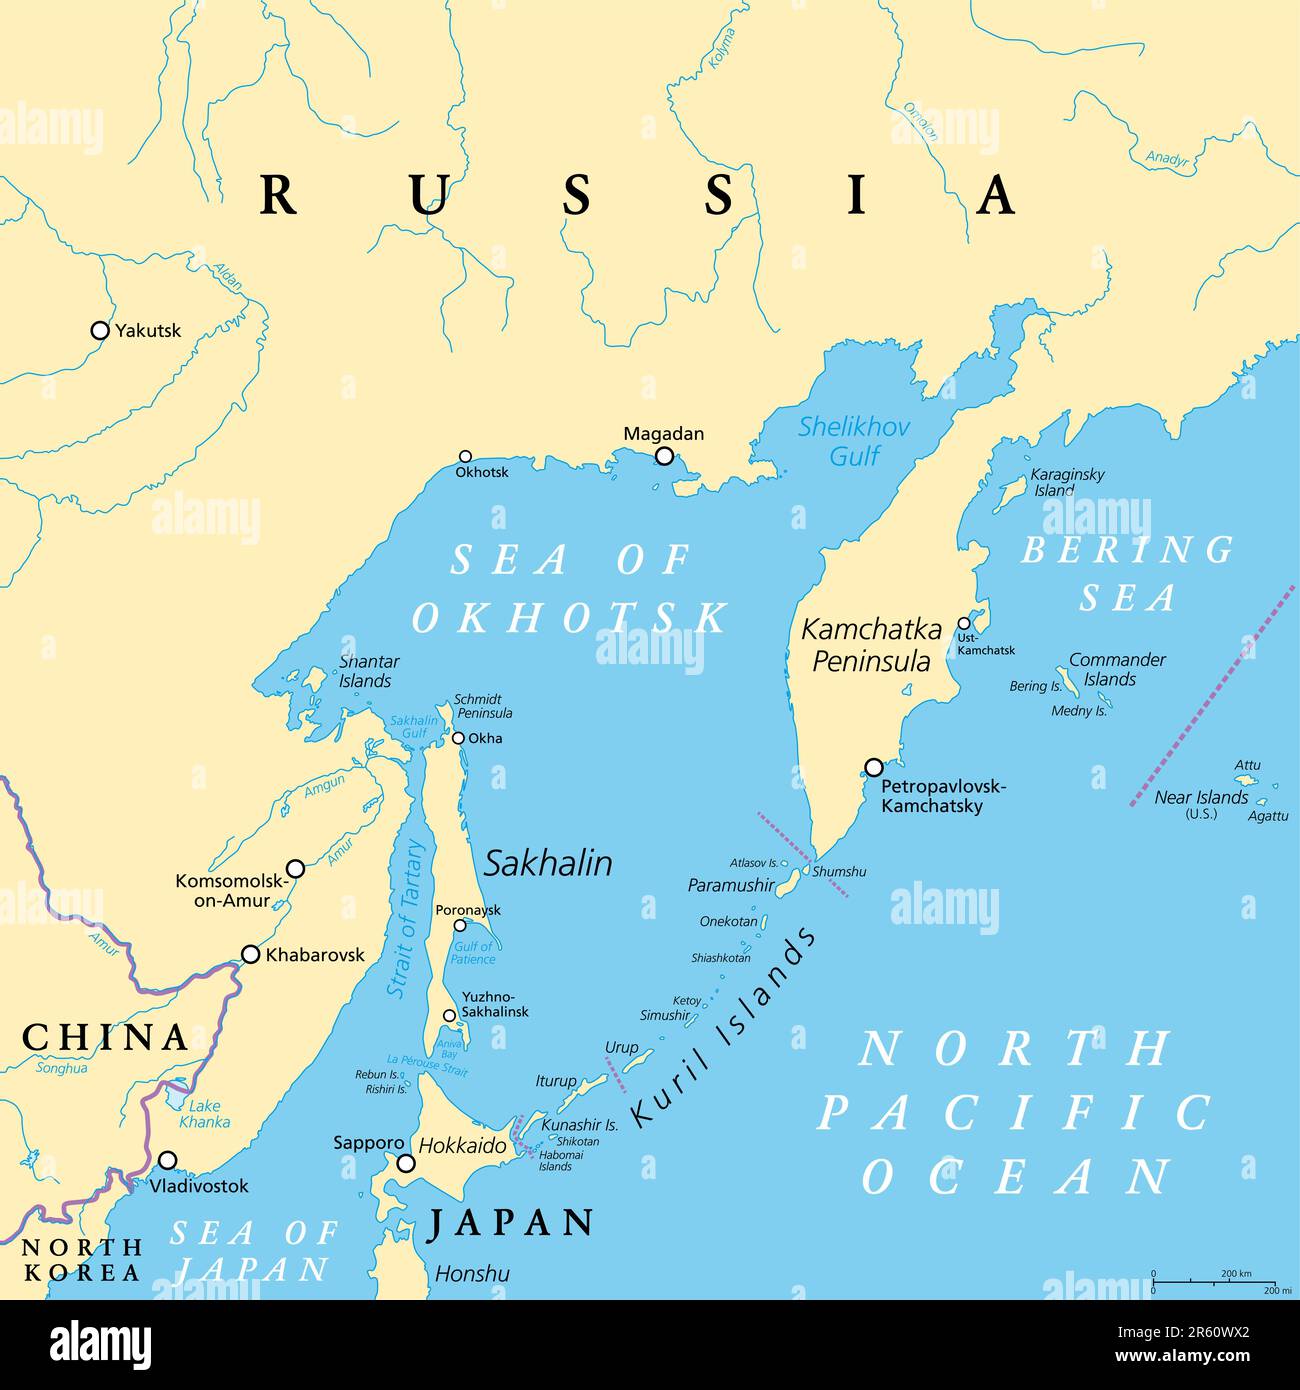 Okhotsk-Meer, politische Karte. Ein Grenzmeer des Nordpazifiks zwischen der Halbinsel Kamchatka, den Kuril-Inseln, Hokkaido und Sachalin. Stockfoto